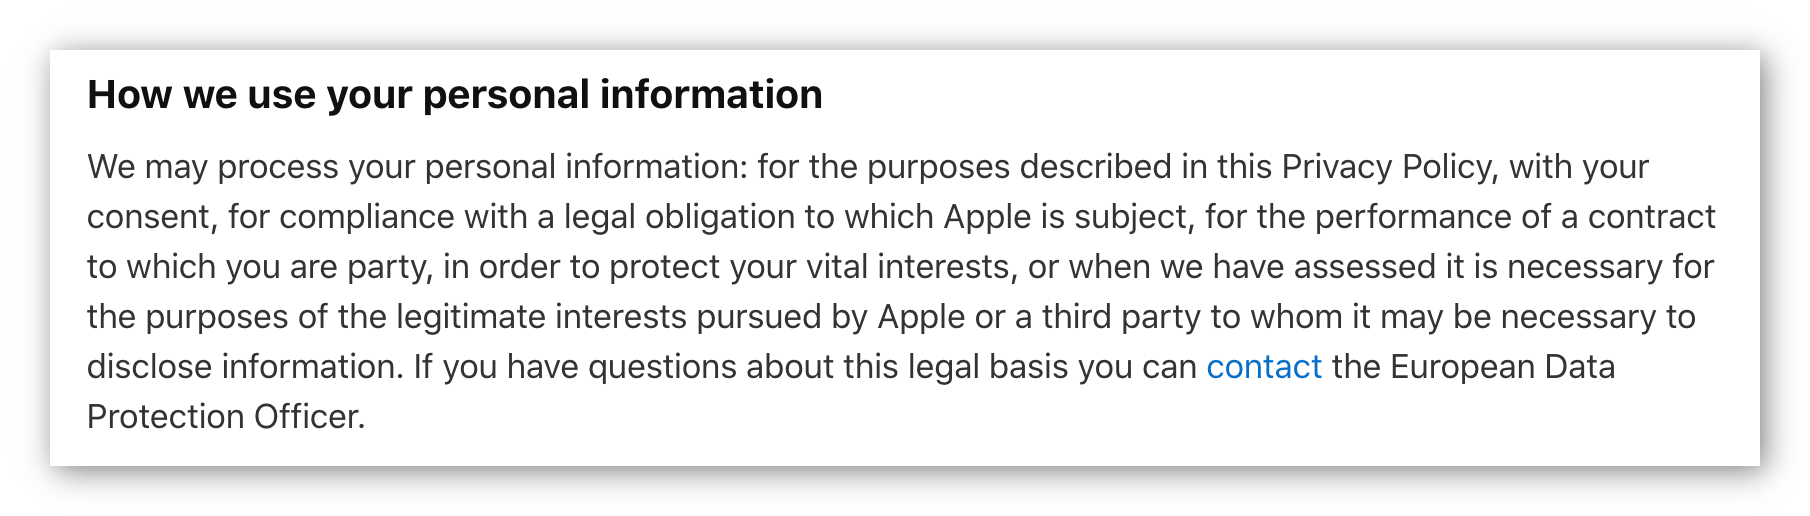 Tangkapan skrin dasar privasi Apple